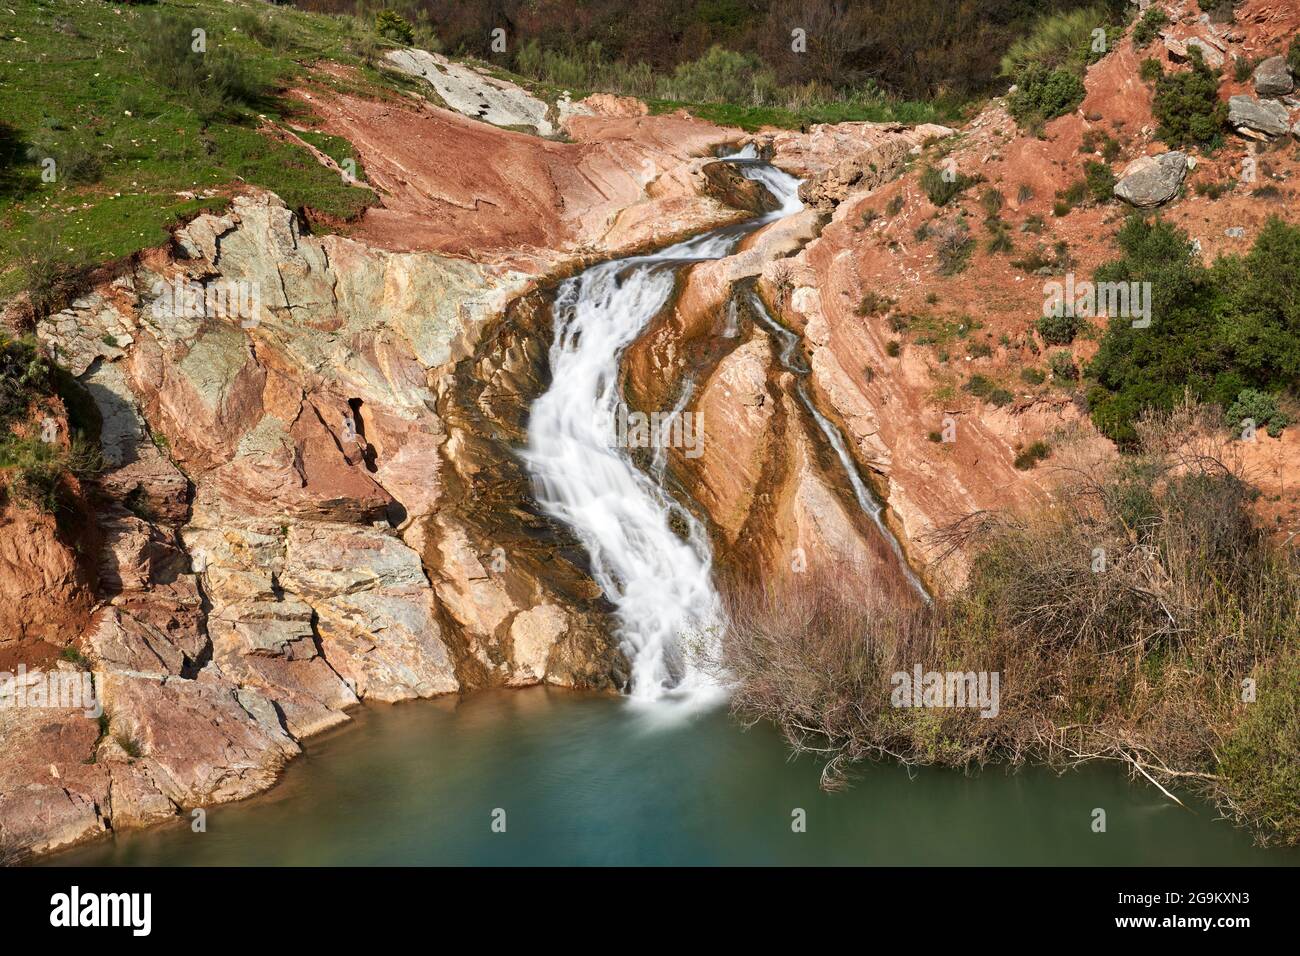 Cascata nel fiume Turon nella città di El Burgo, provincia di Malaga. Sierra de las Nieves, Andalusia, Spagna Foto Stock